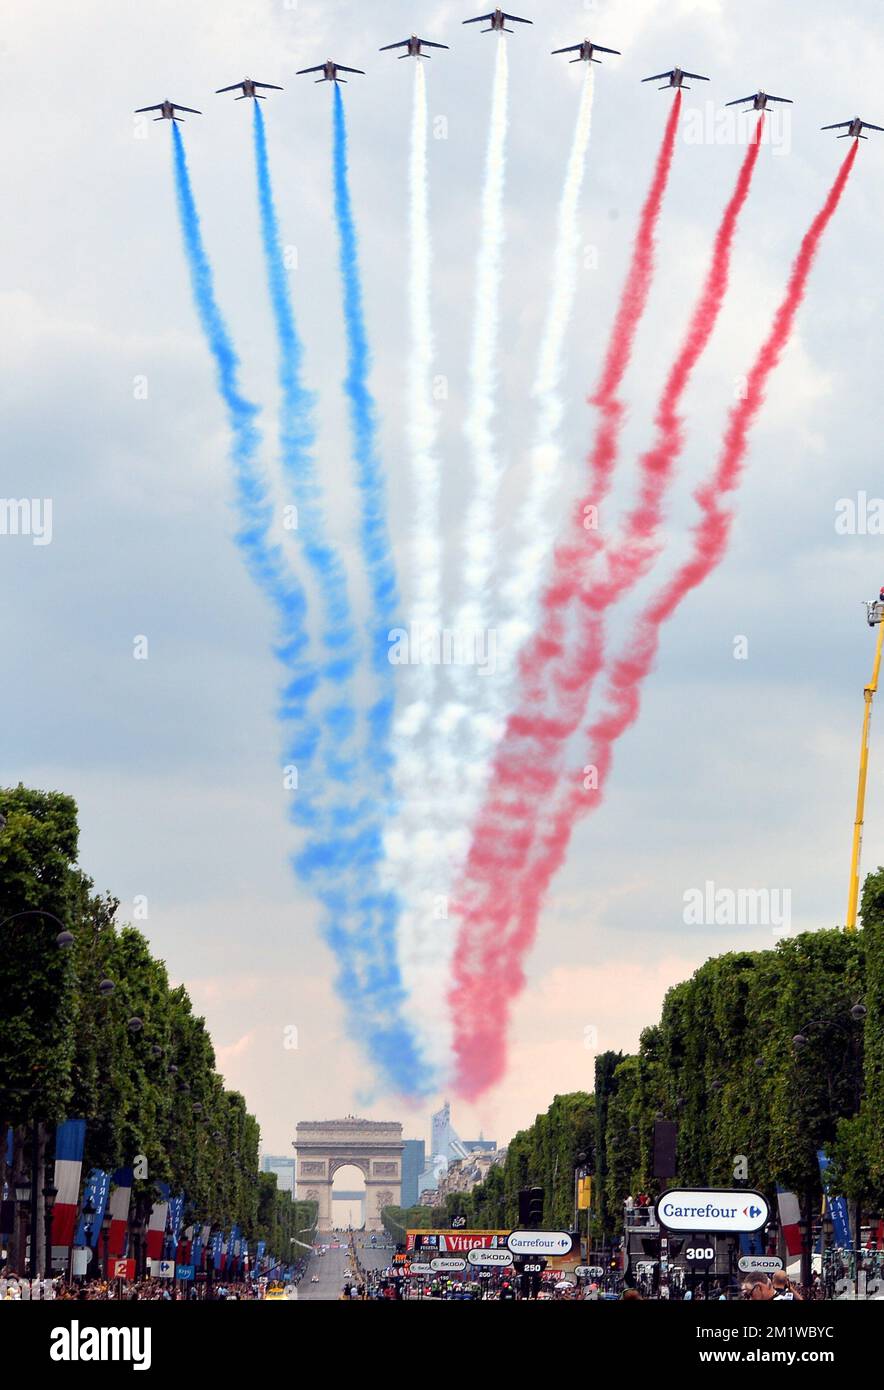 Die Abbildung zeigt ein Spektakel in der letzten Etappe des Radrennen Tour de France 101., 137,5km von Evry nach Paris Champs-Elysees, Frankreich, am Sonntag, den 27. Juli 2014. Stockfoto